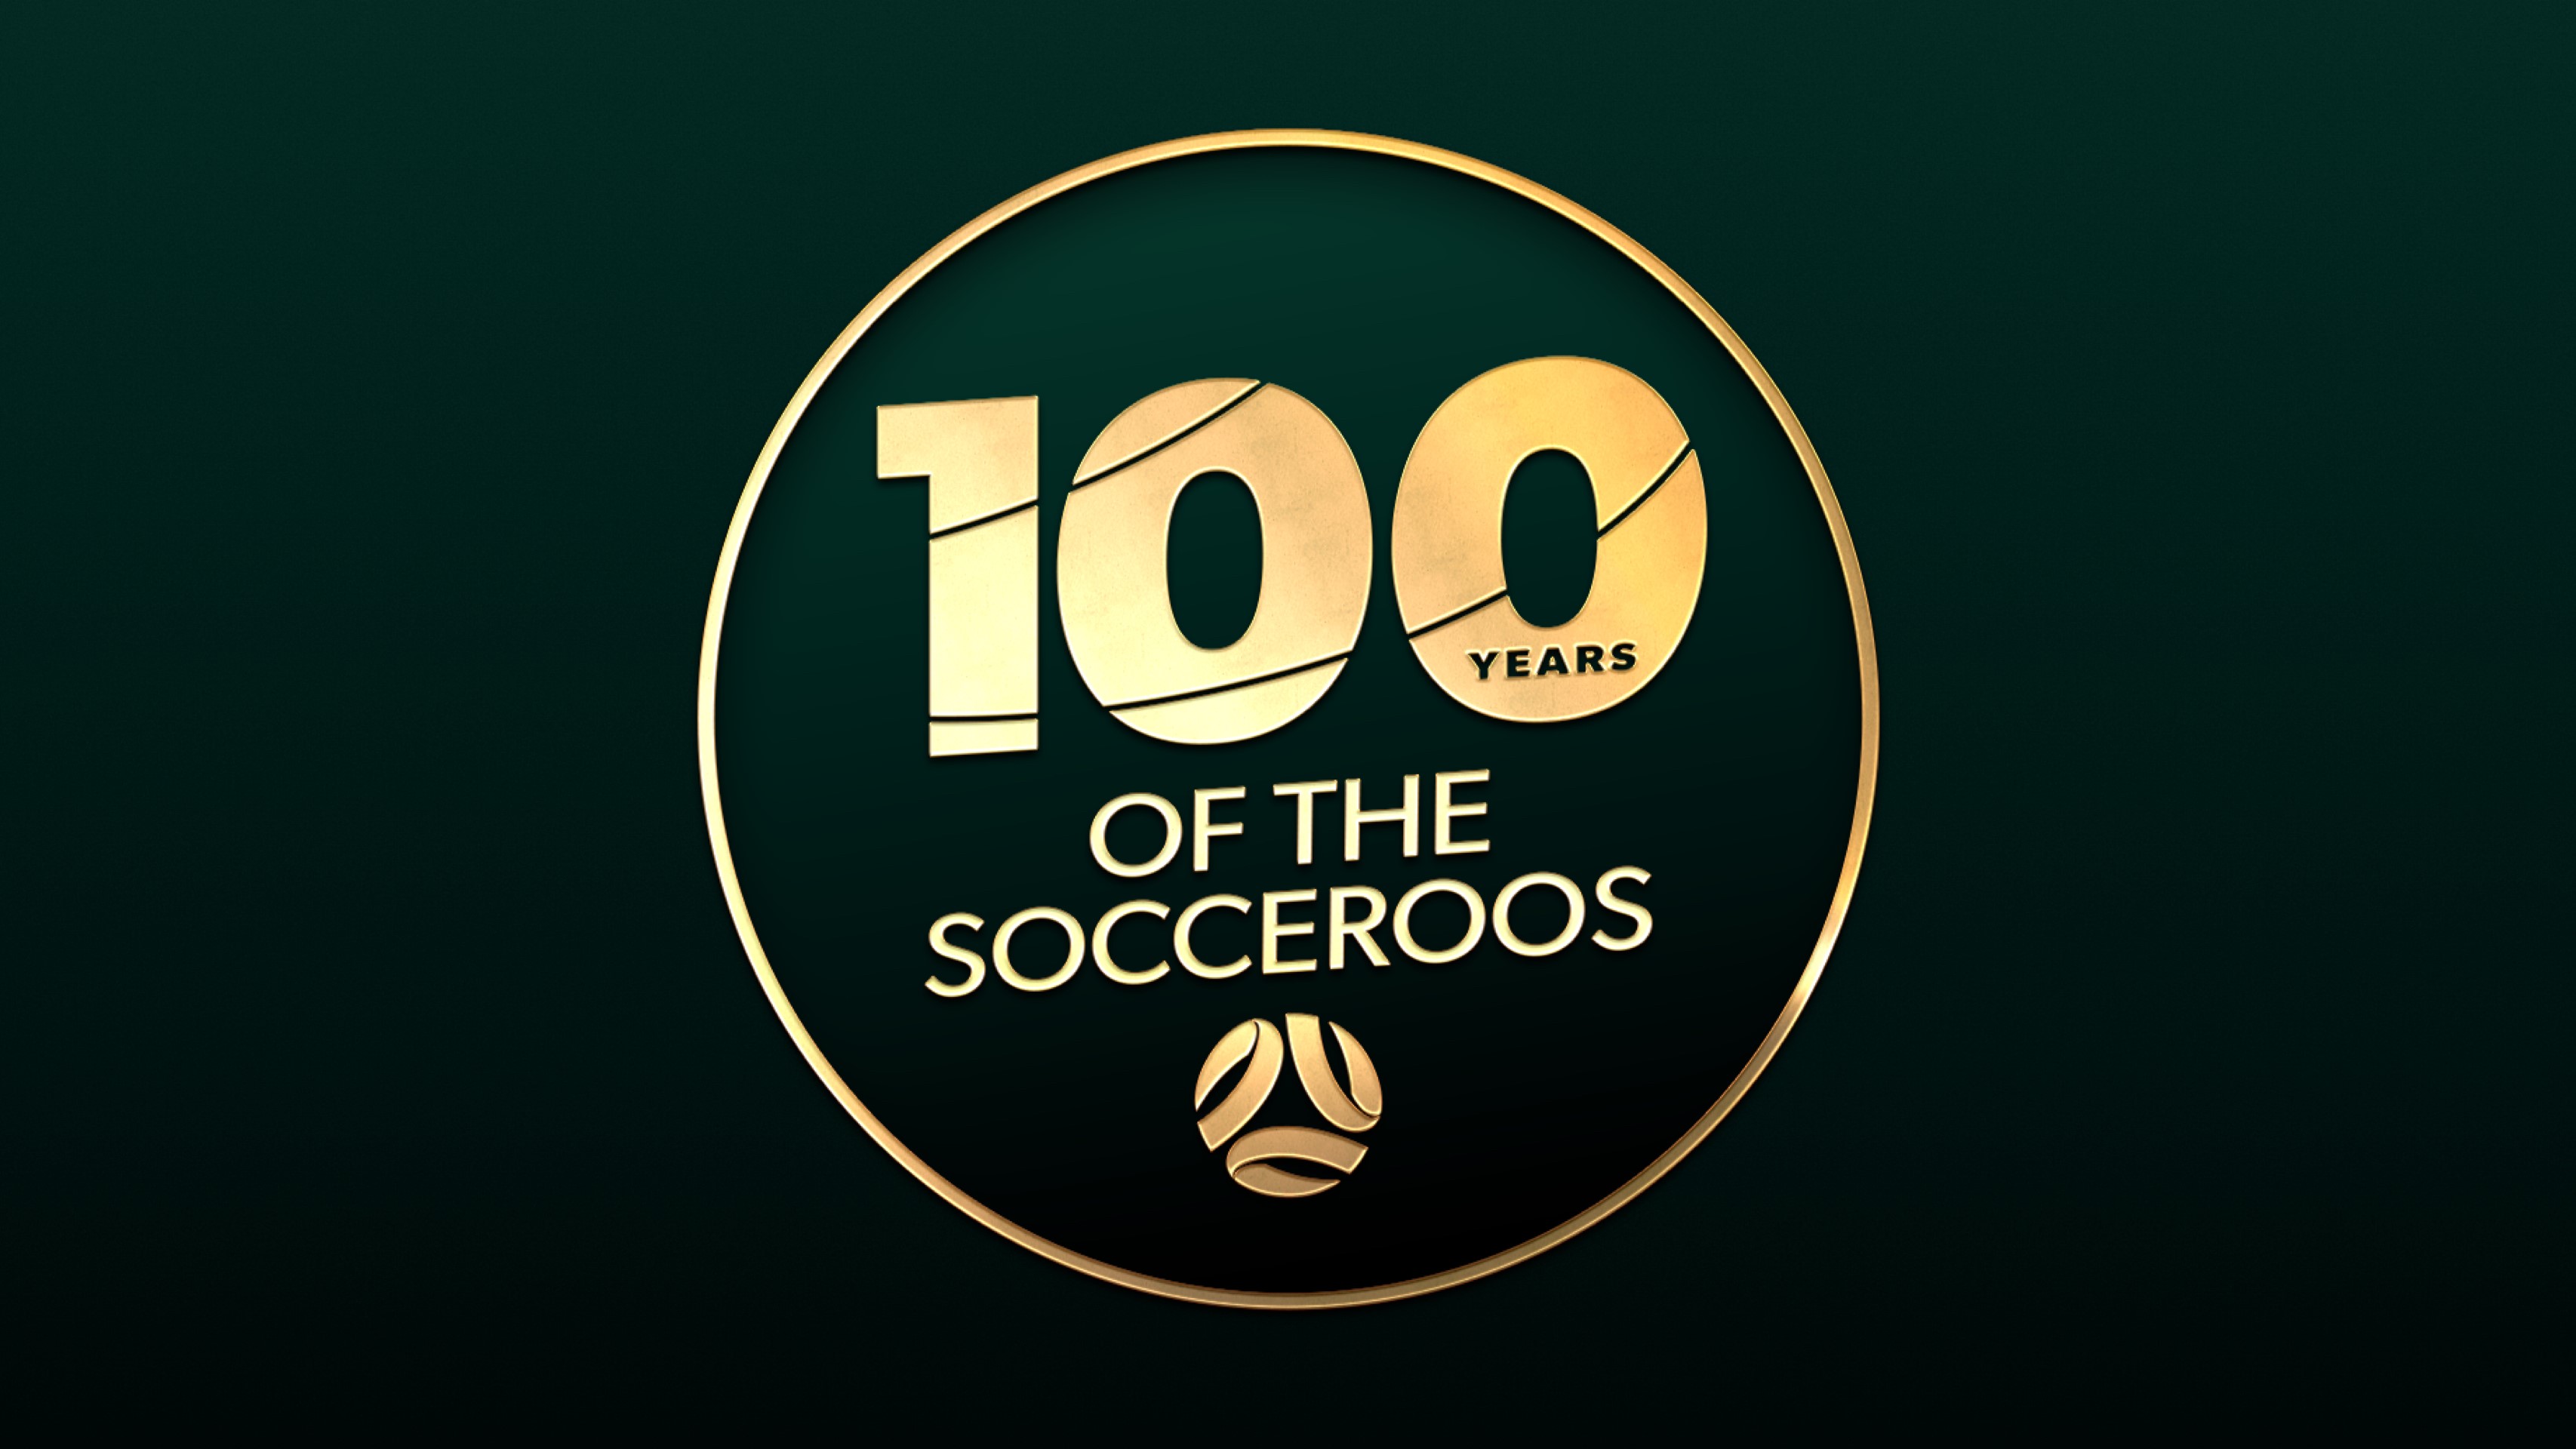 www.socceroos.com.au